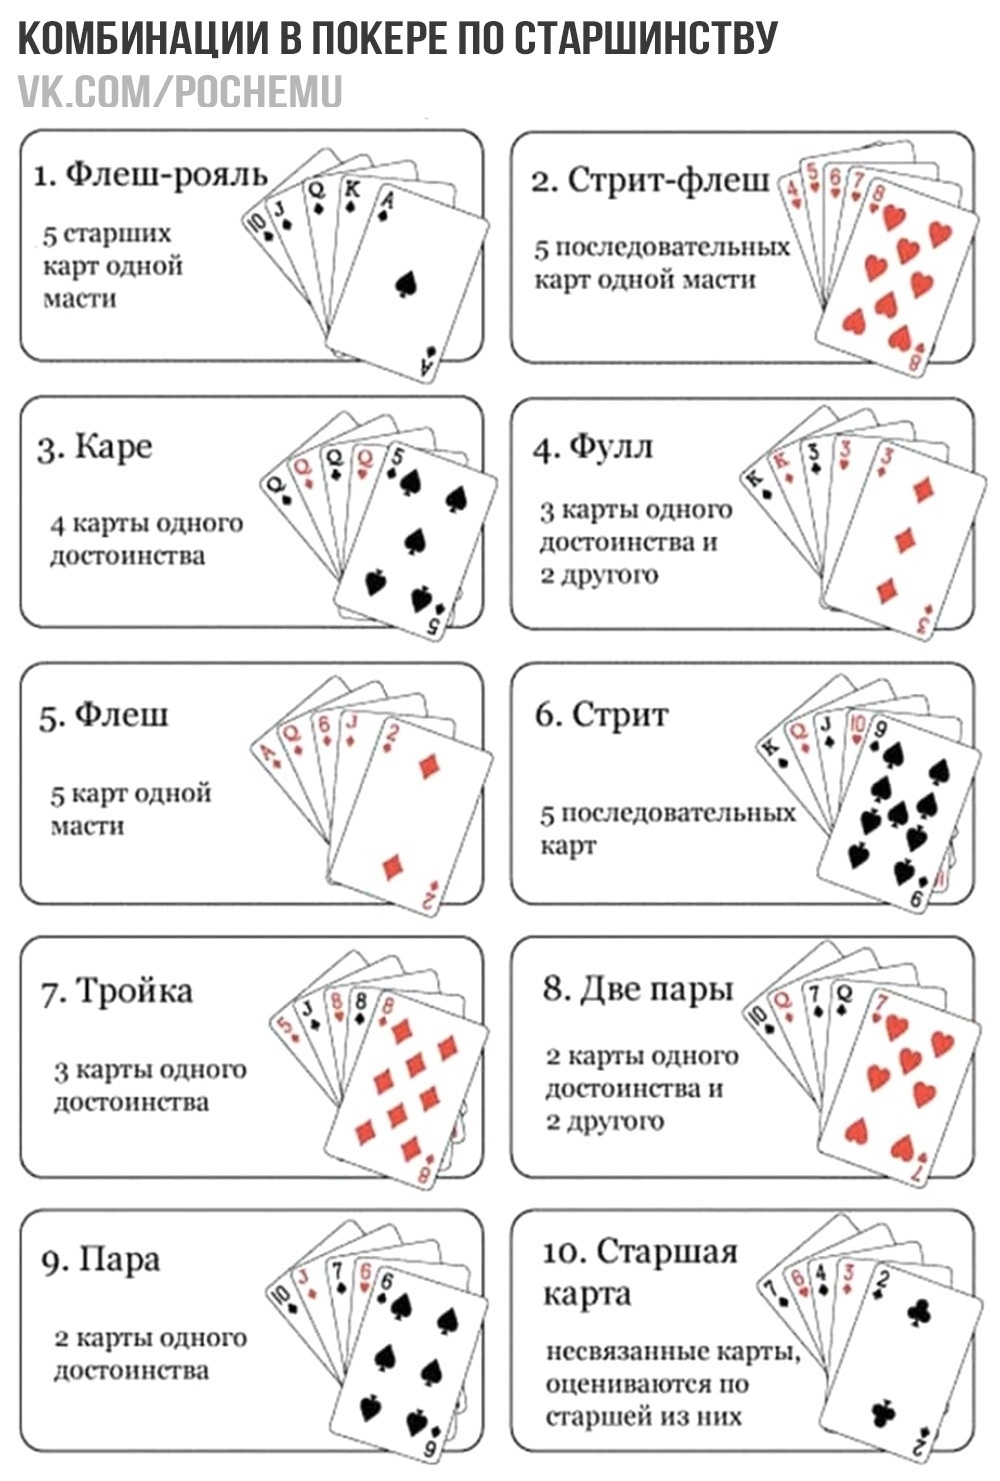 По сколько карт раздают в покере. Игра в Покер правила для начинающих комбинации. Комбинации в покере по старшинству. Комбинации в покере 36 карт. Стрит флеш в покере комбинация.